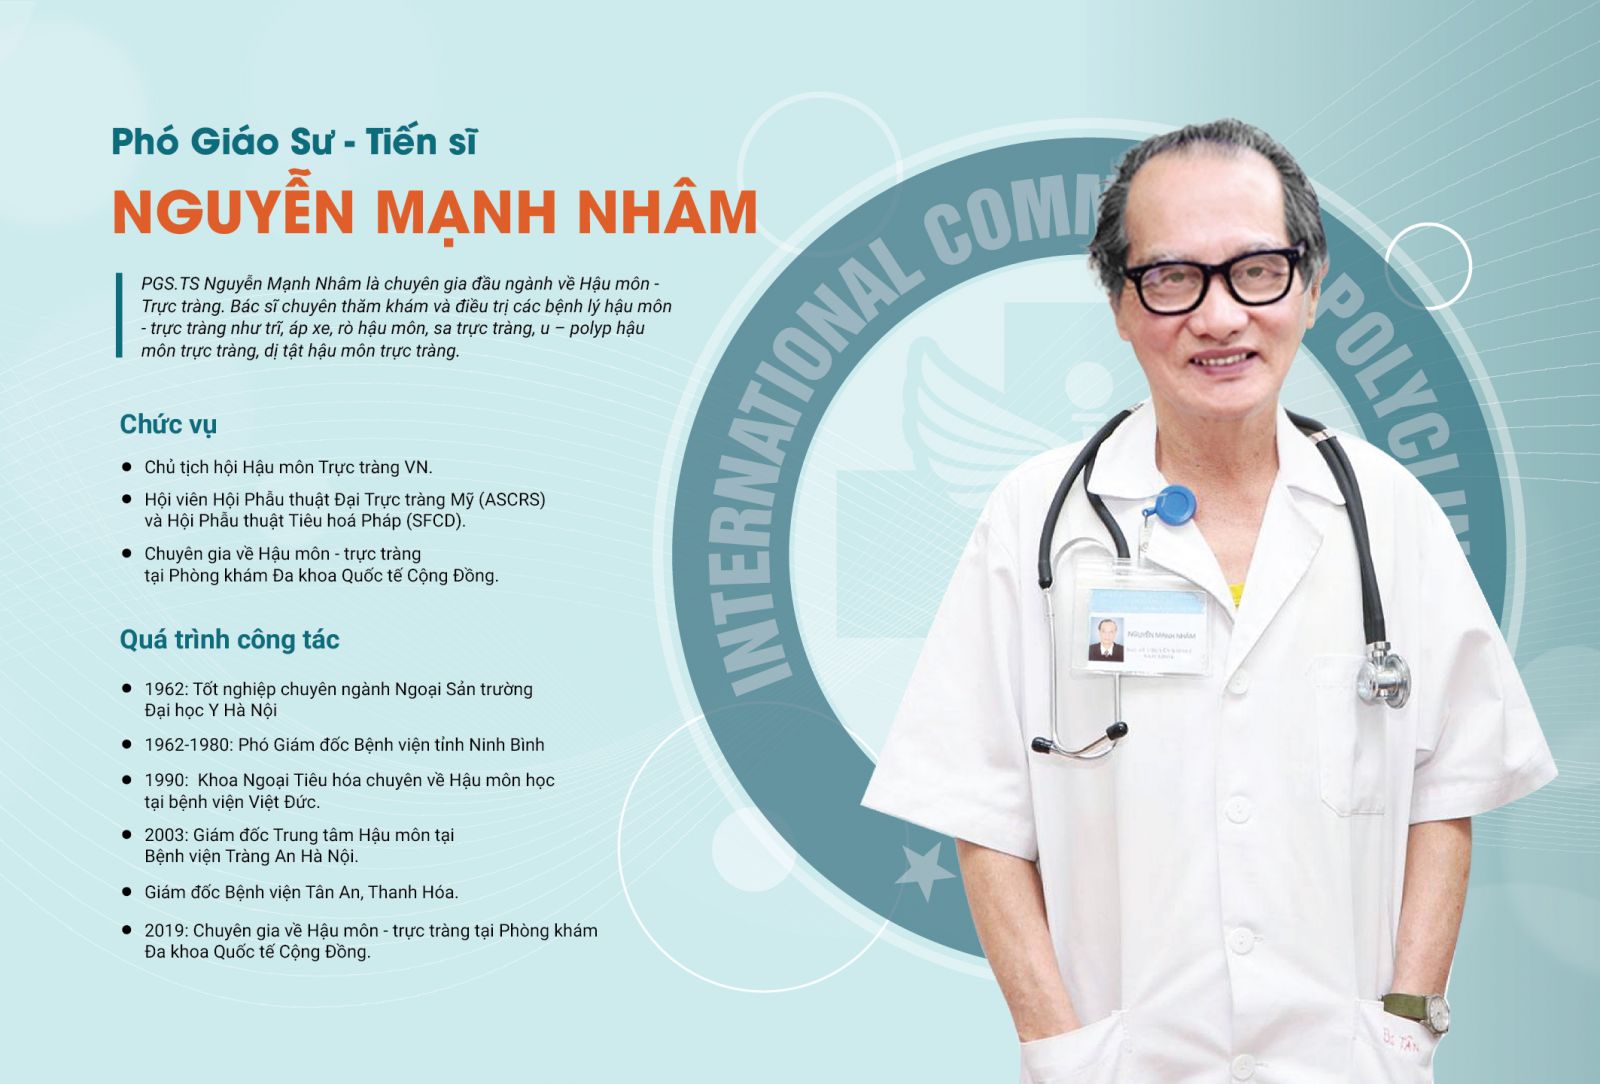 Bác sĩ Nguyễn Mạnh Nhâm